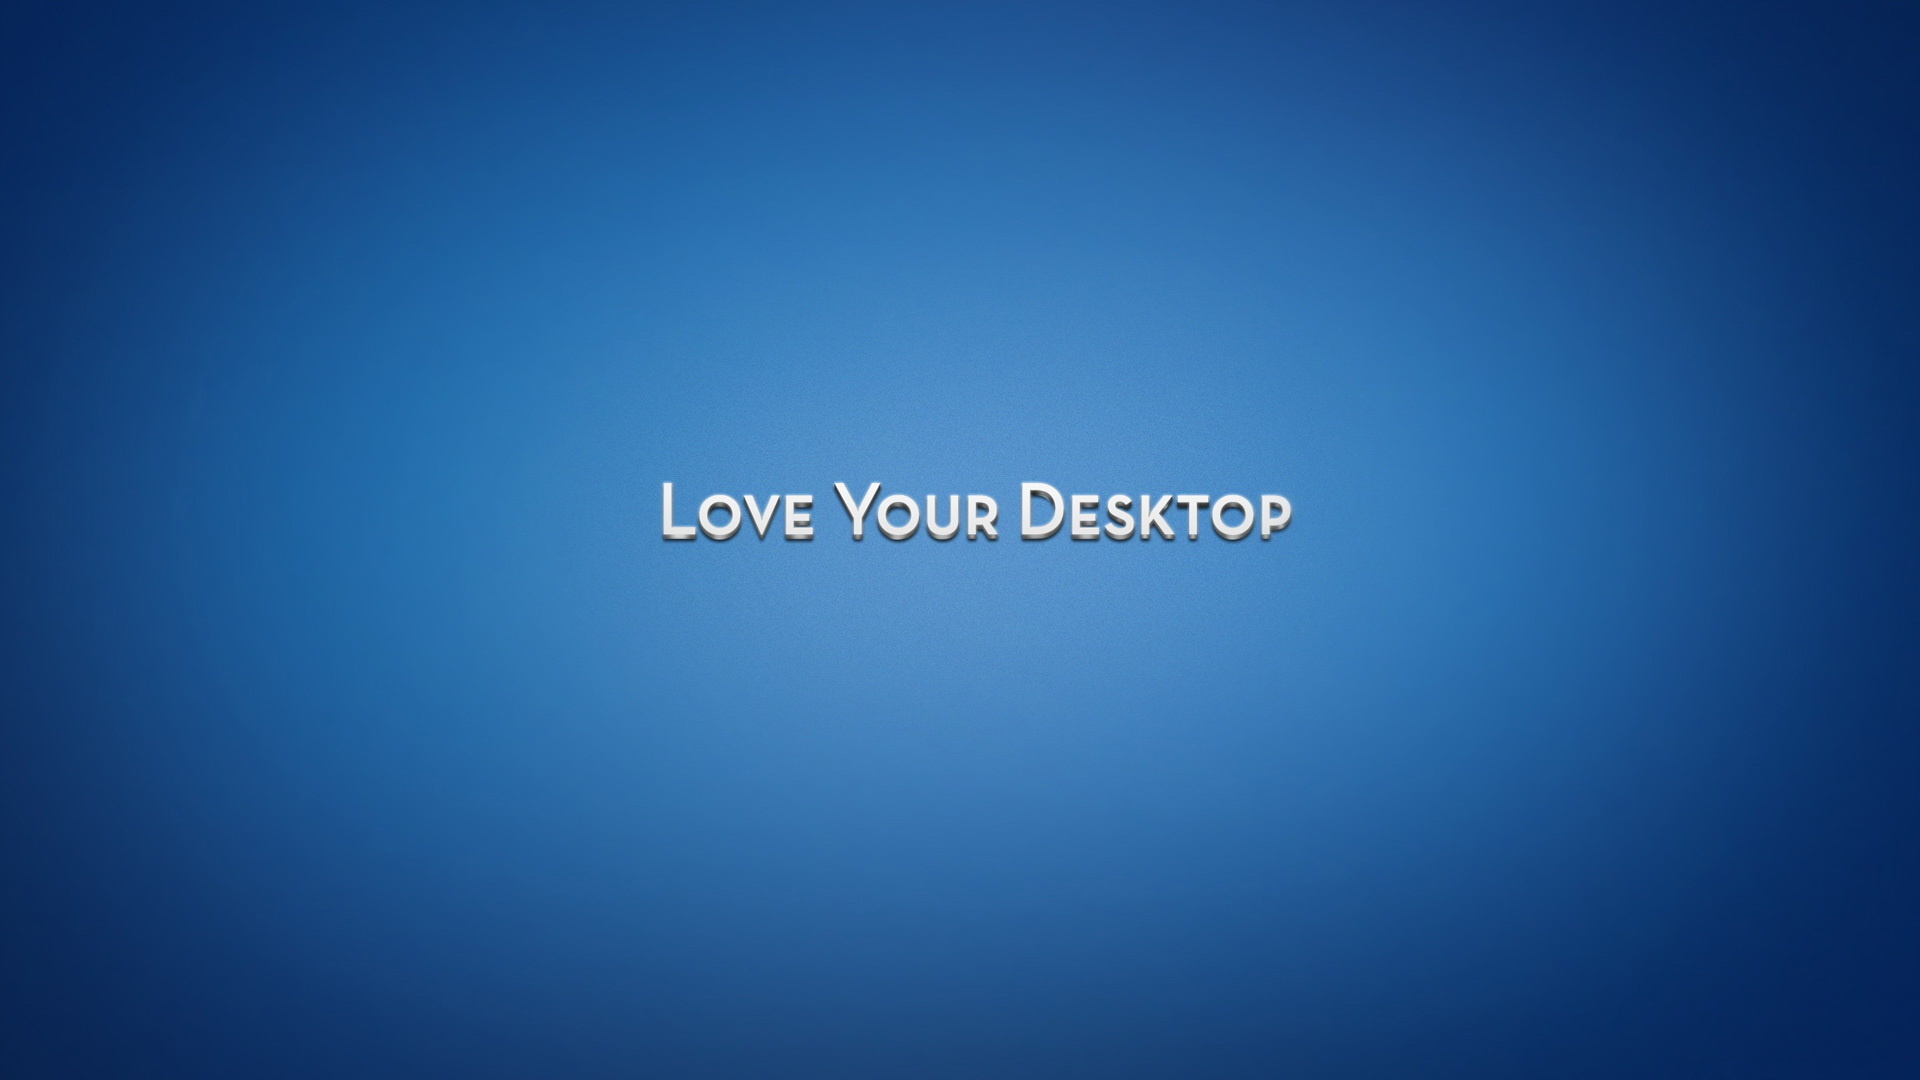 Love Your Desktop Best HD Wallpaper